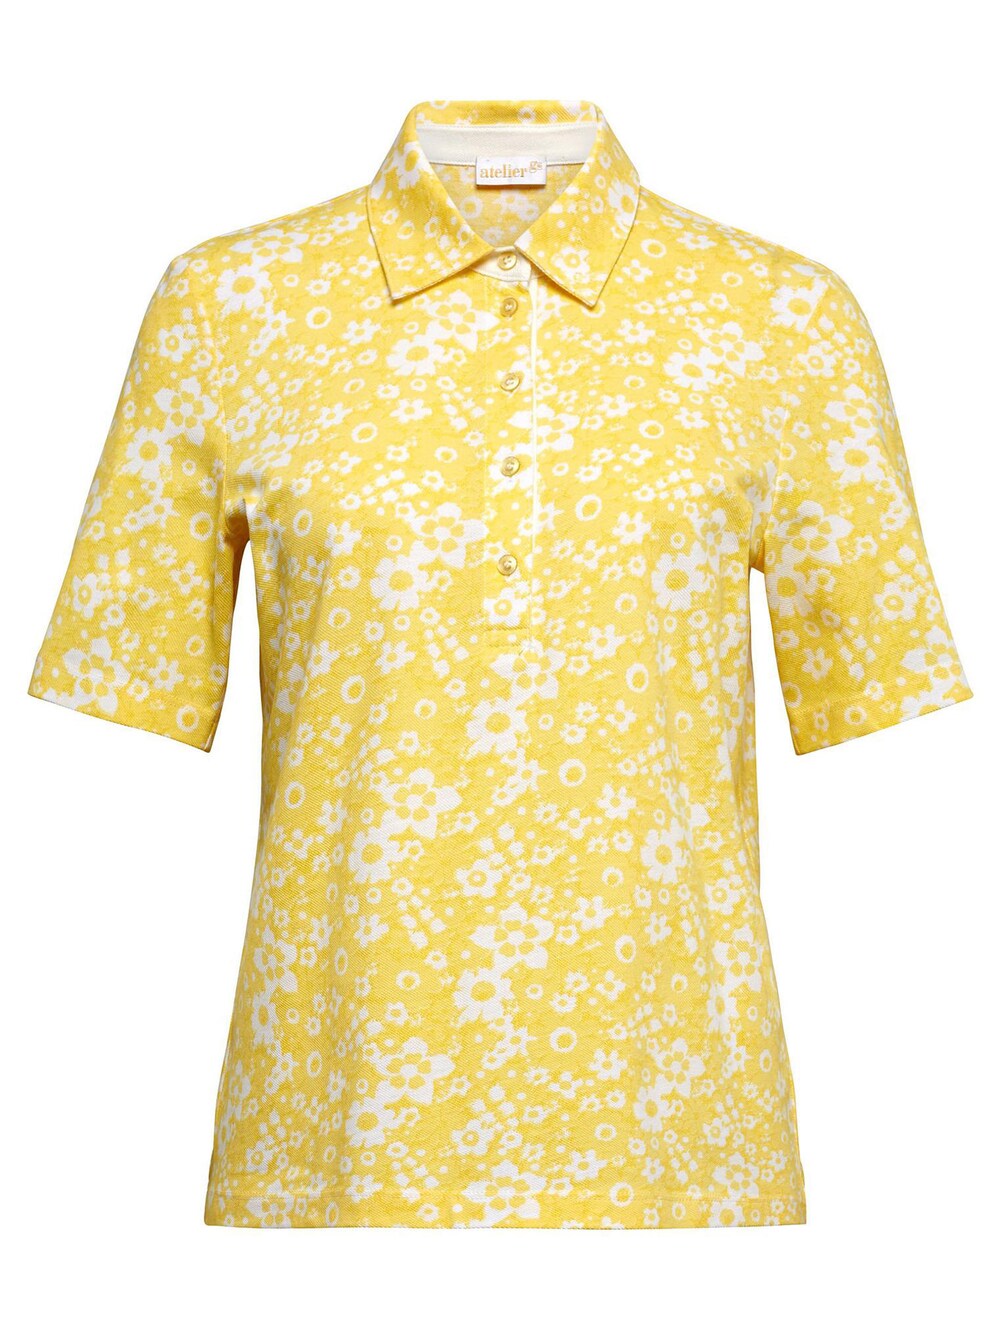 Рубашка Goldner, желтый